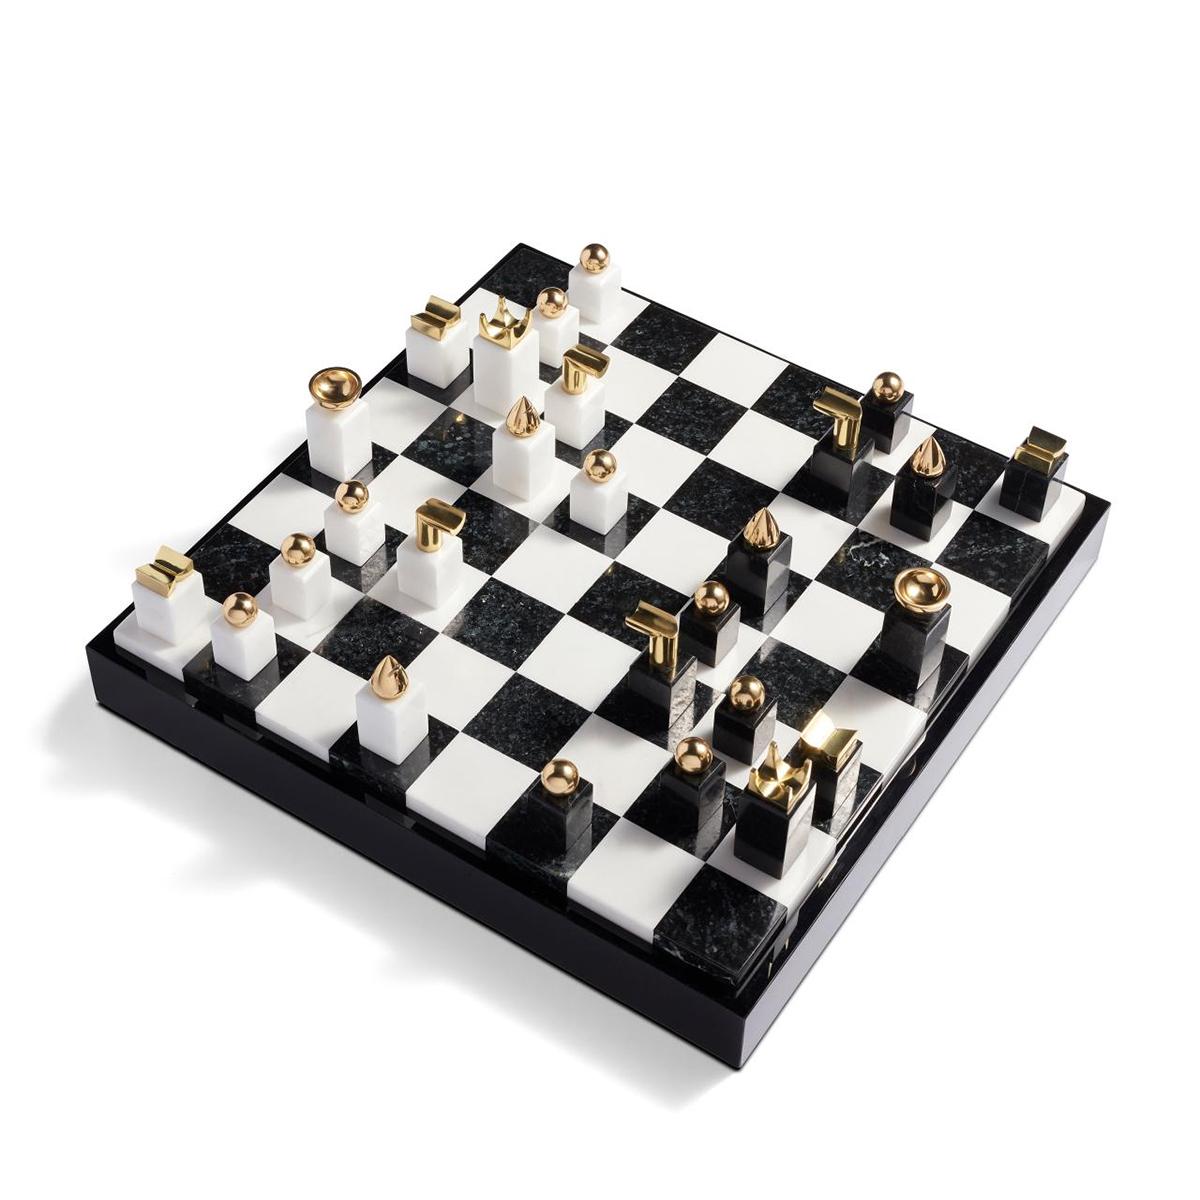 Schachspiel mit schwarzen und weißen Steinen aus Stein
mit 24-karätig vergoldeten Metallornamenten. Schachbrettmuster mit
schwarzer Stein, weißer Stein, schwarzes Harz und Holz. Rückseite im Schachbrettmuster
der Koffer enthält Teile zur